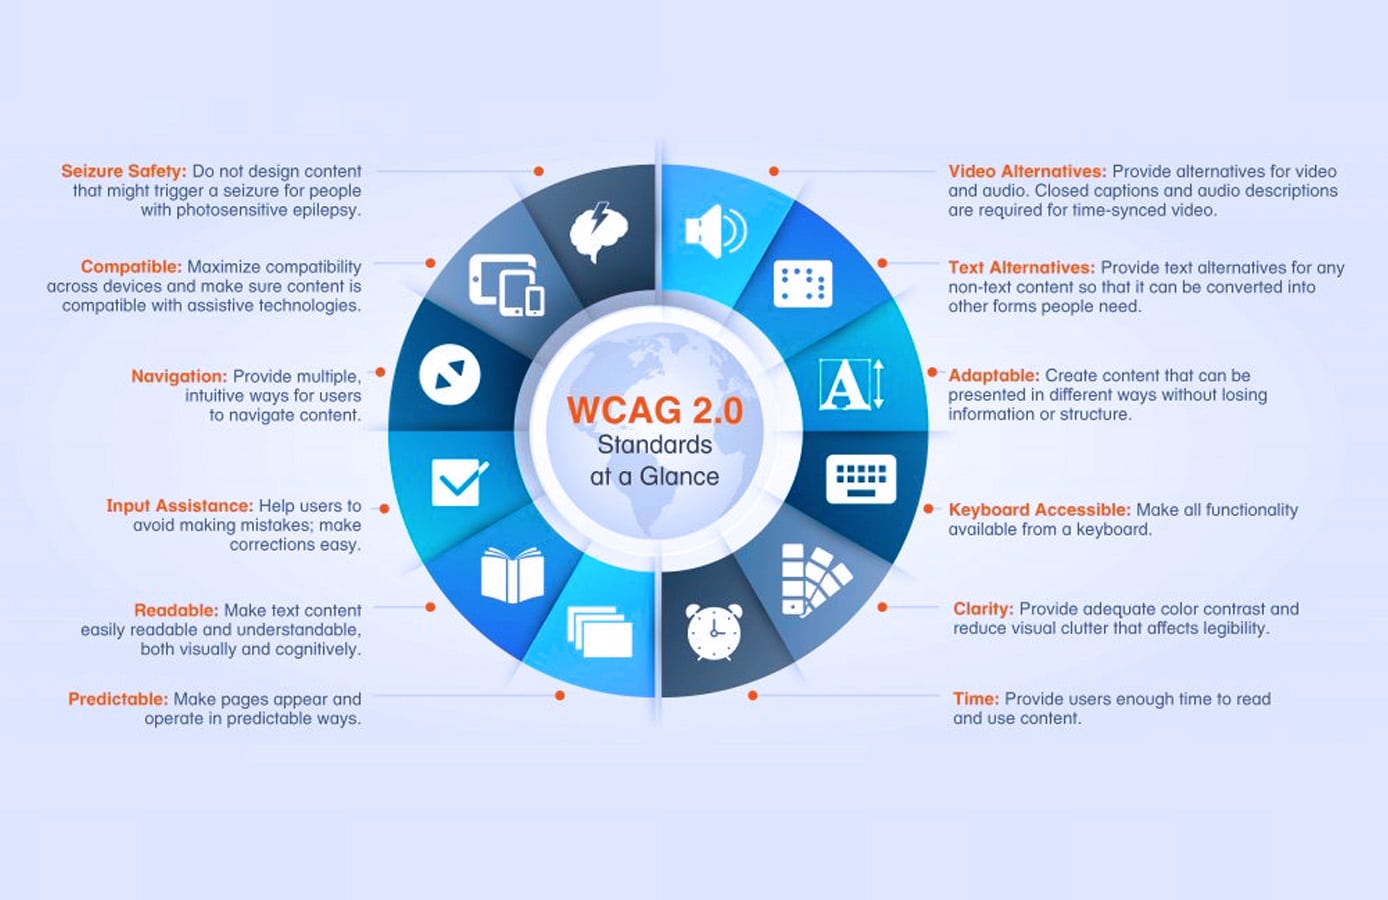 WCAG-normen in een oogopslag